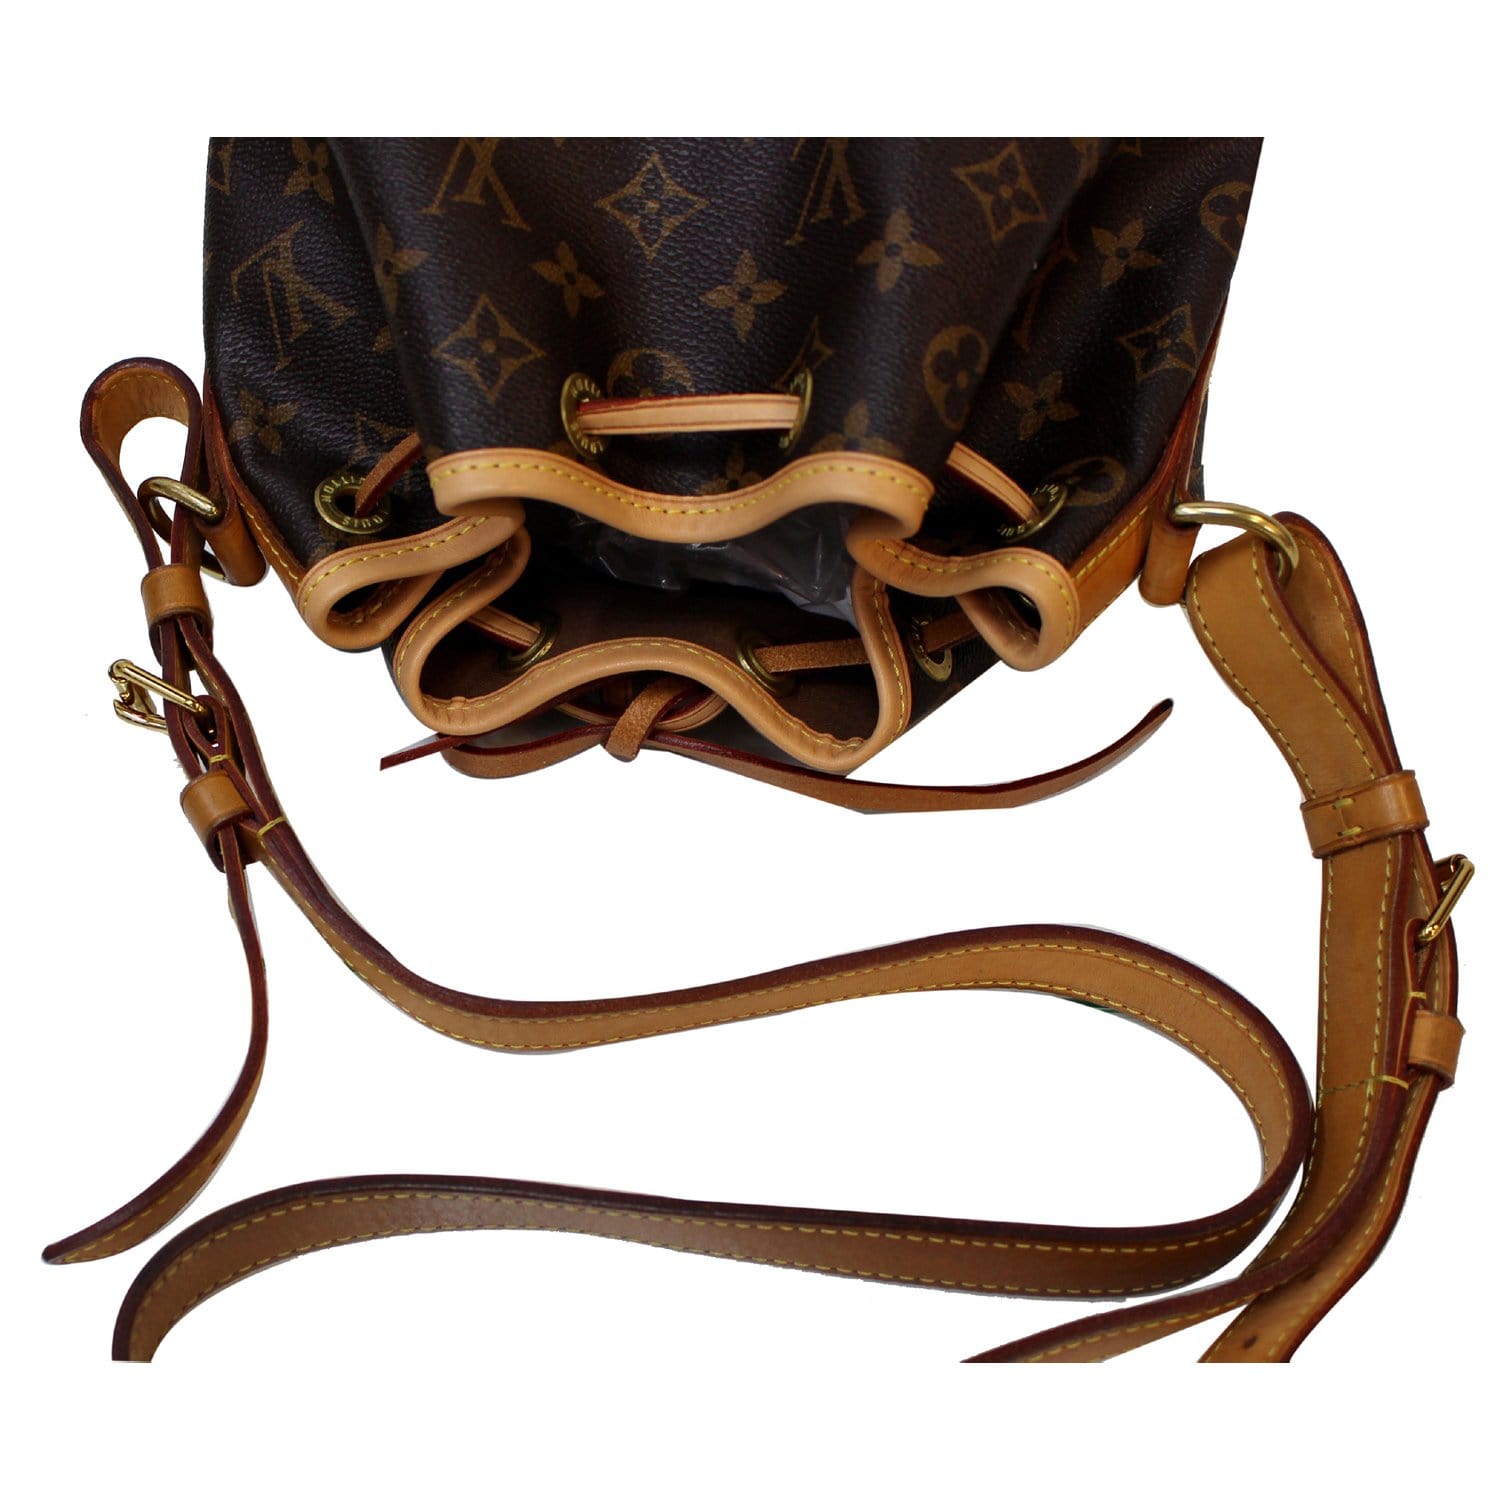 Louis Vuitton Petit Noe NM Monogram Shoulder Bag Brown